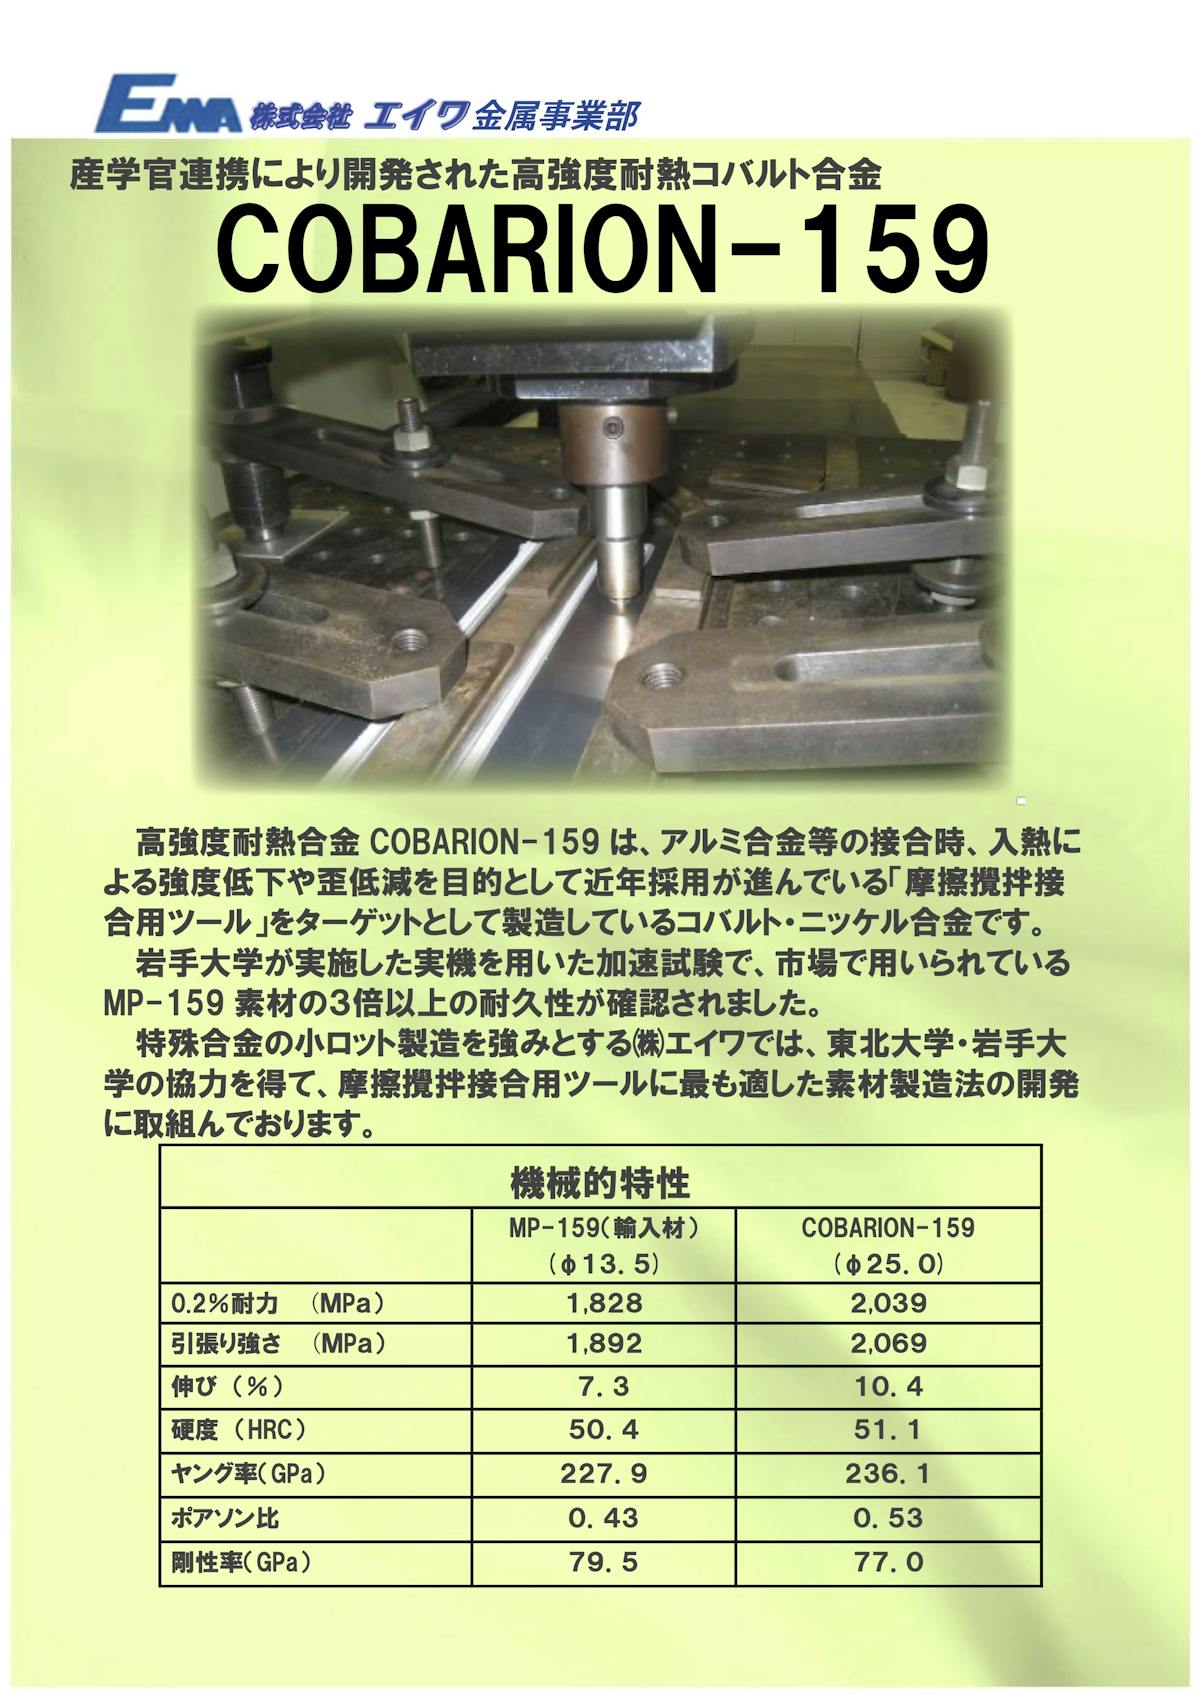 COBARION-159　資料